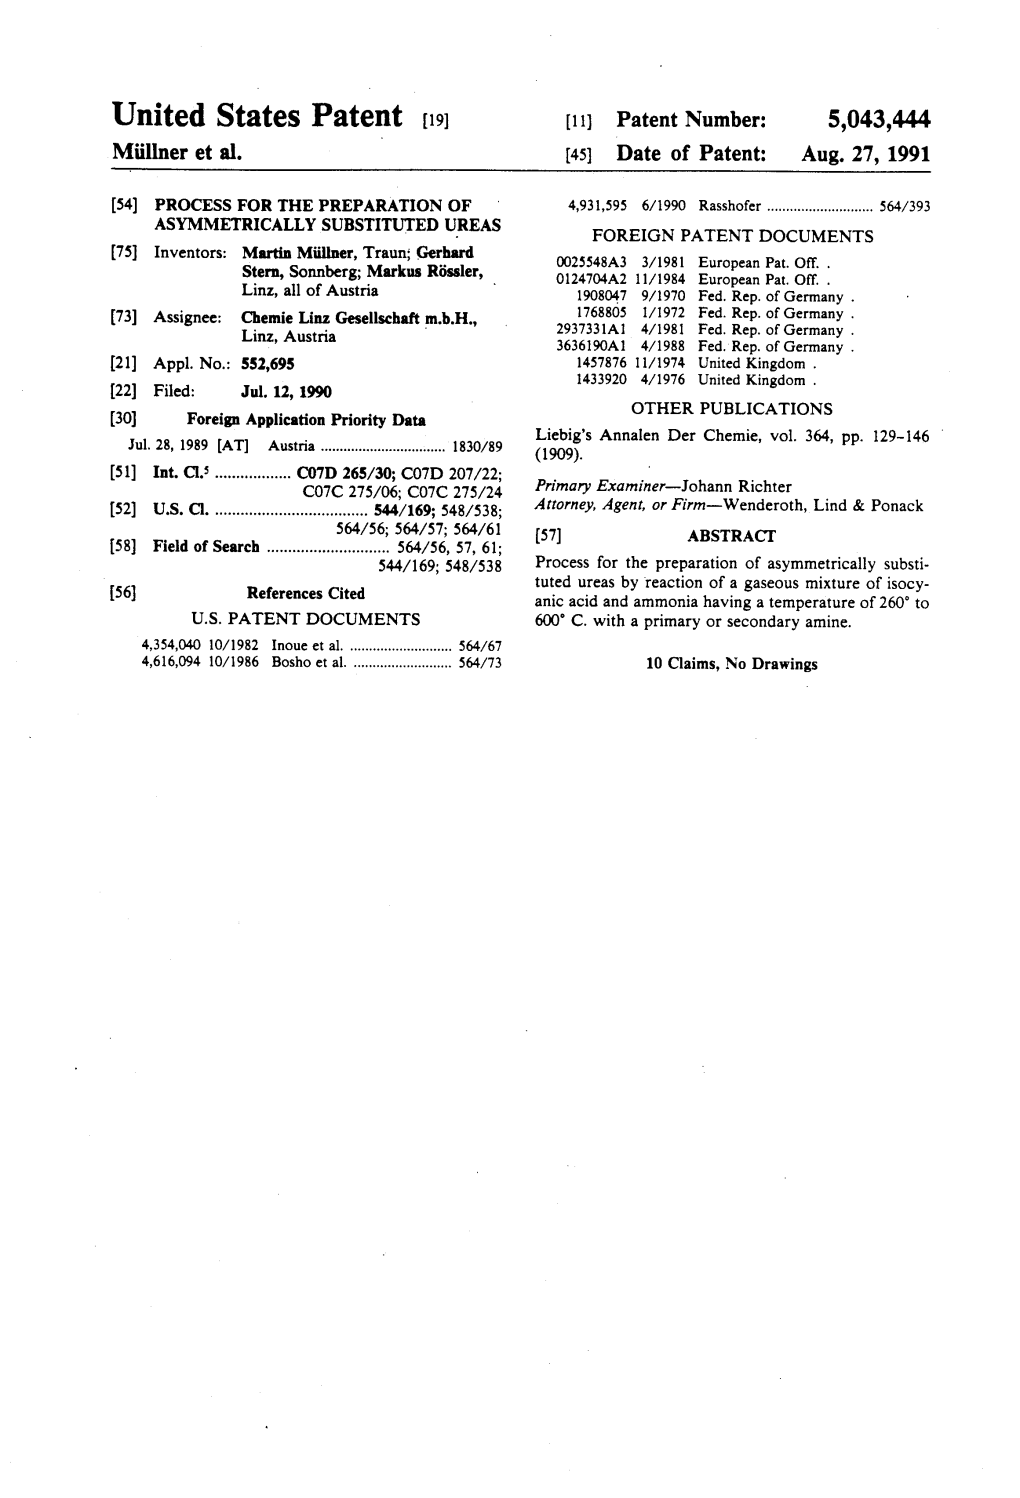 United States Patent (19) 11) Patent Number: 5,043,444 Milner Et Al